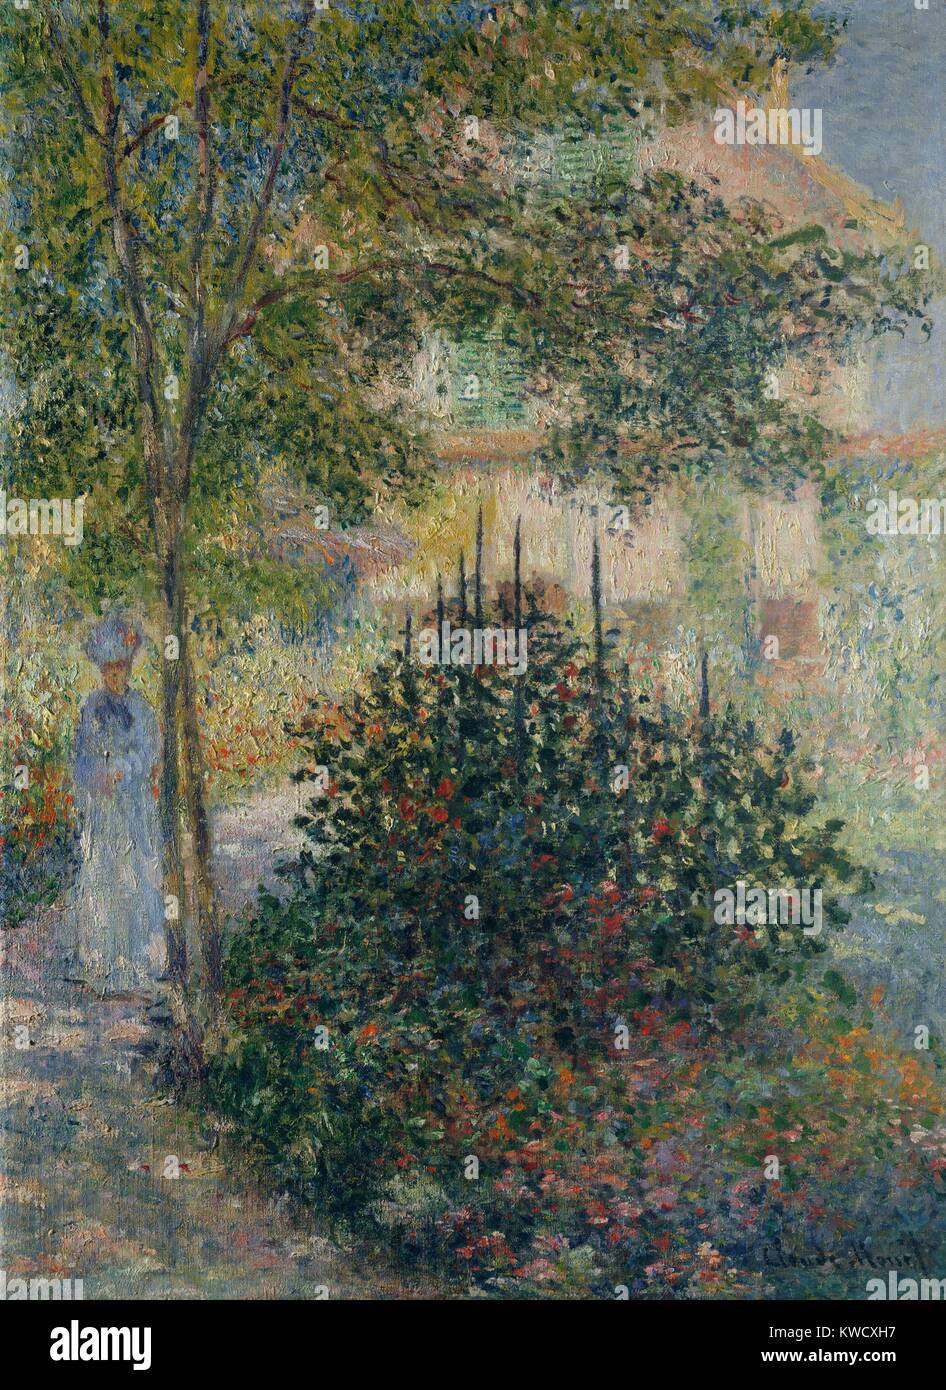 Camille Monet in giardino a Argenteuil, di Claude Monet, impressionista francese la pittura ad olio. Monet applicata la vernice in piccoli daubs su tutta la tela, uno stile che divenne caratteristica della sua opera matura (BSLOC 2017 3 25) Foto Stock